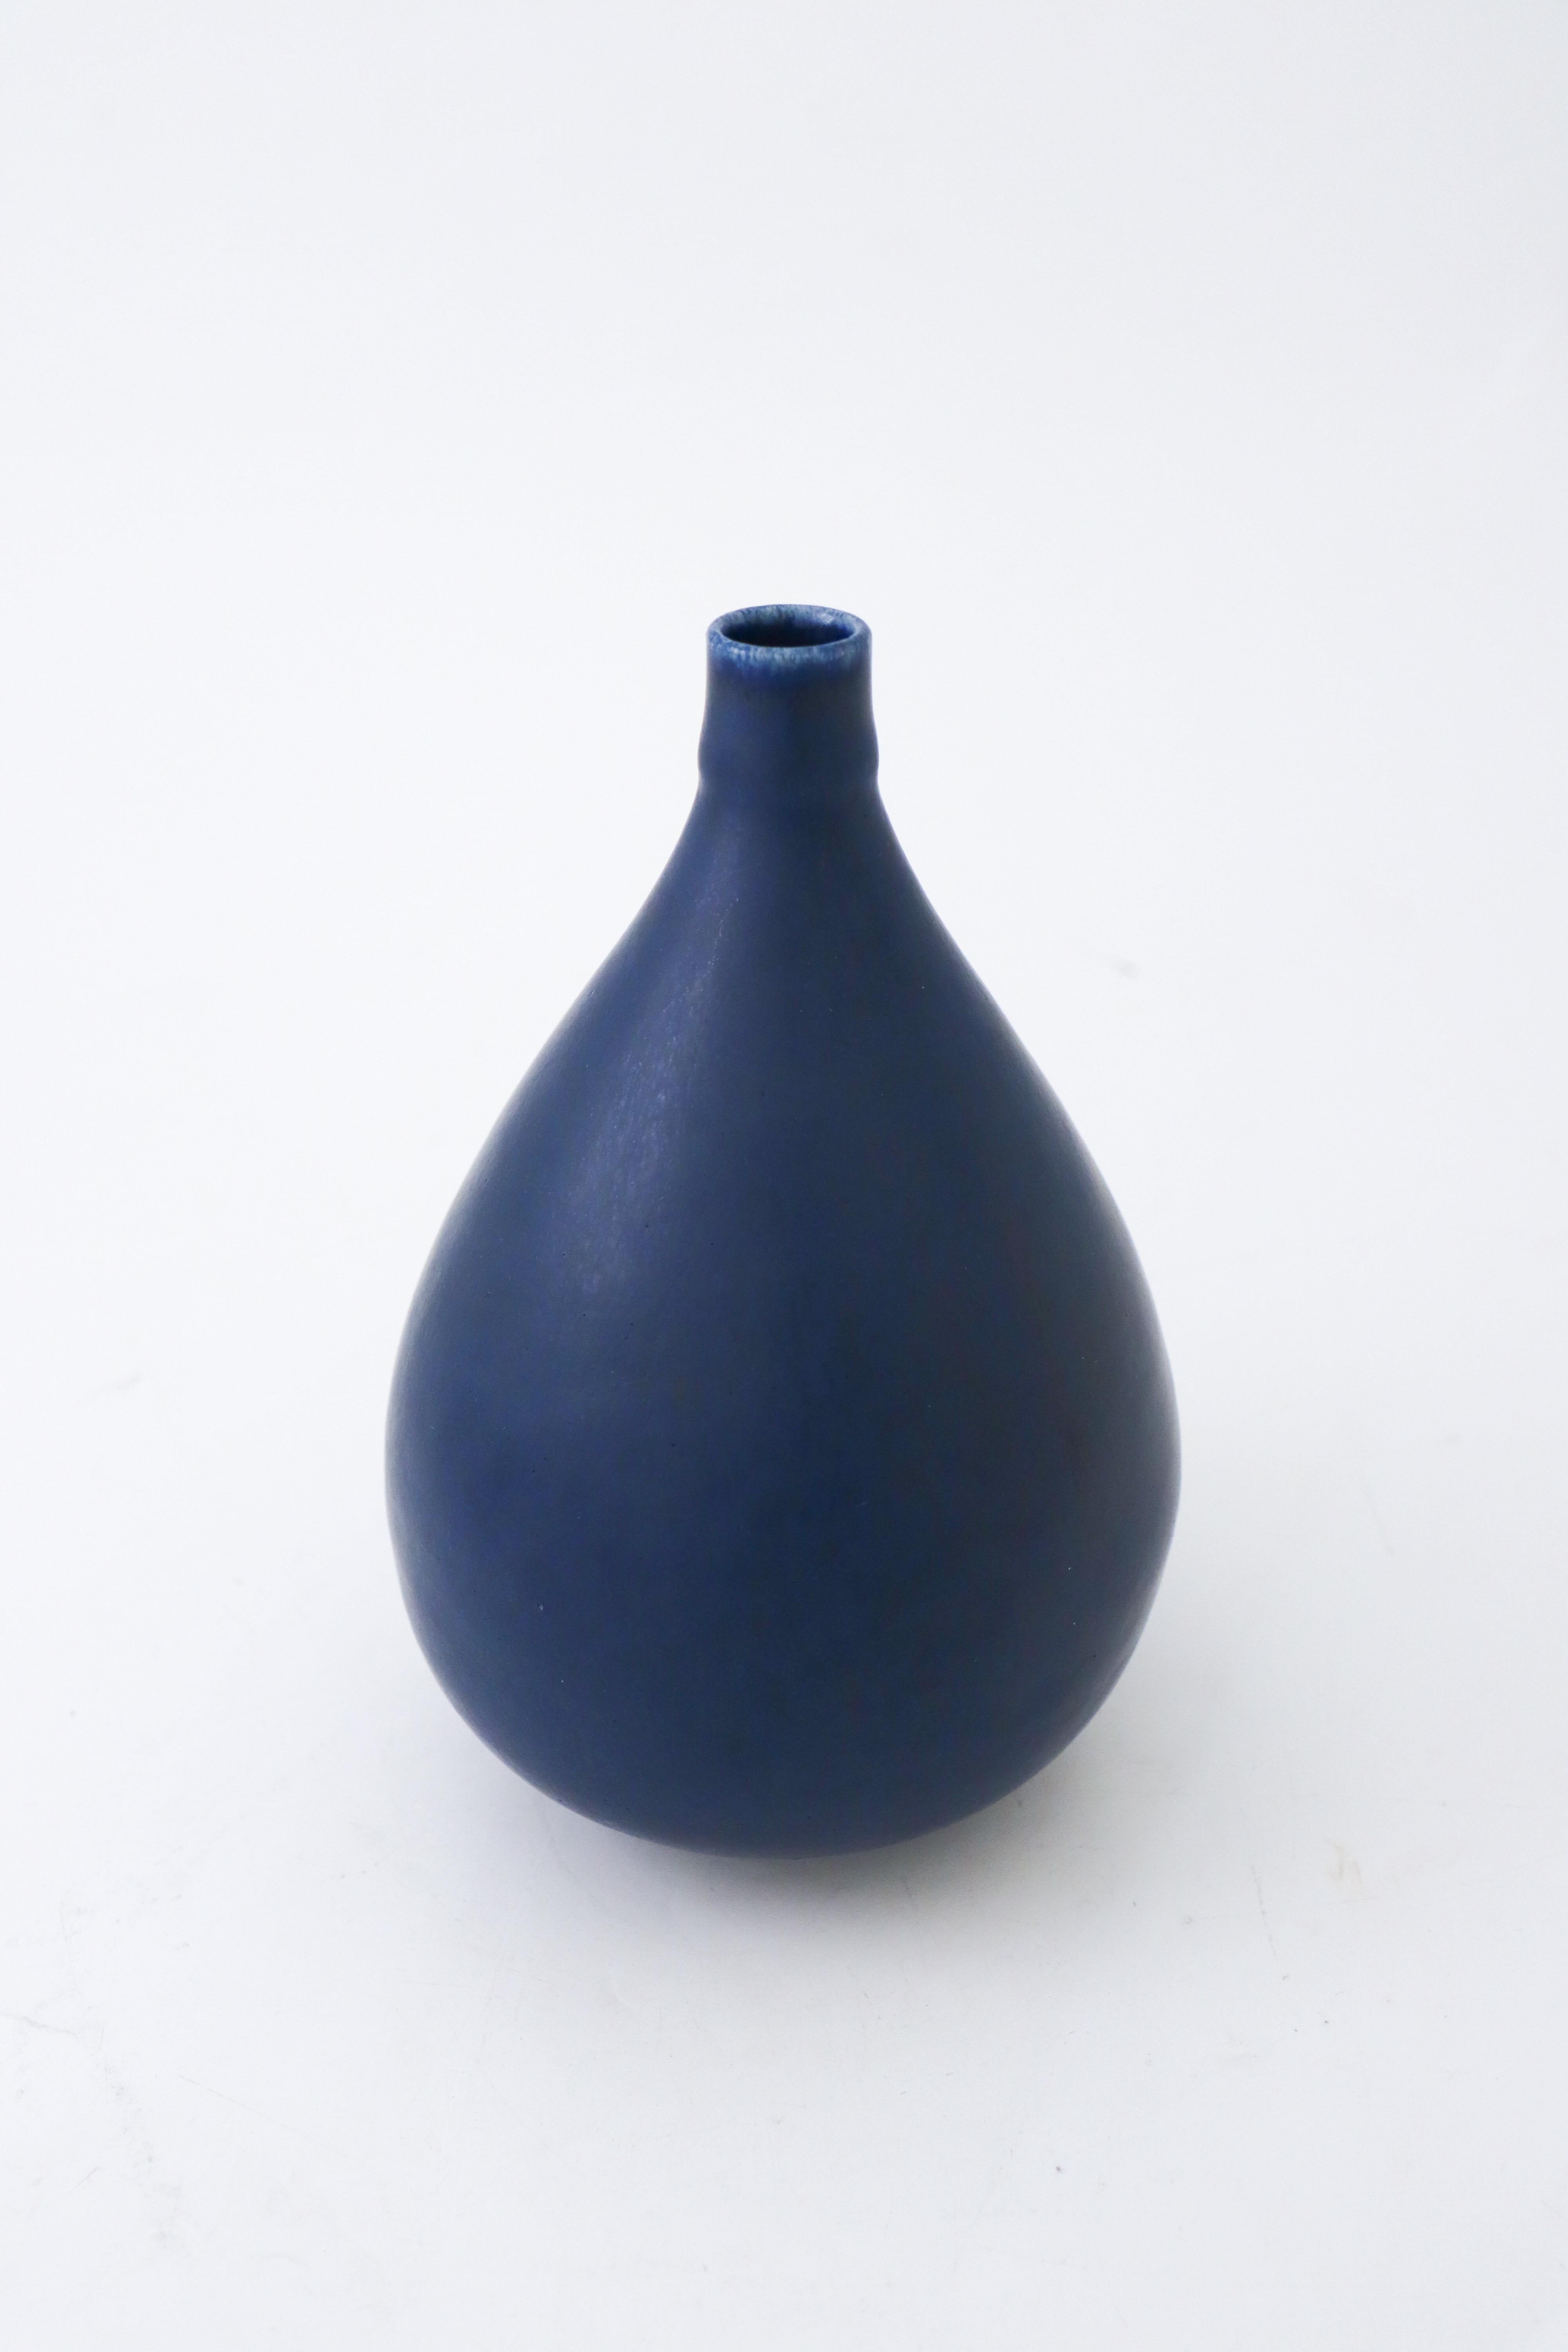 Glazed Lovely Blue Vase, Saxbo Eva Stæhr Nielsen